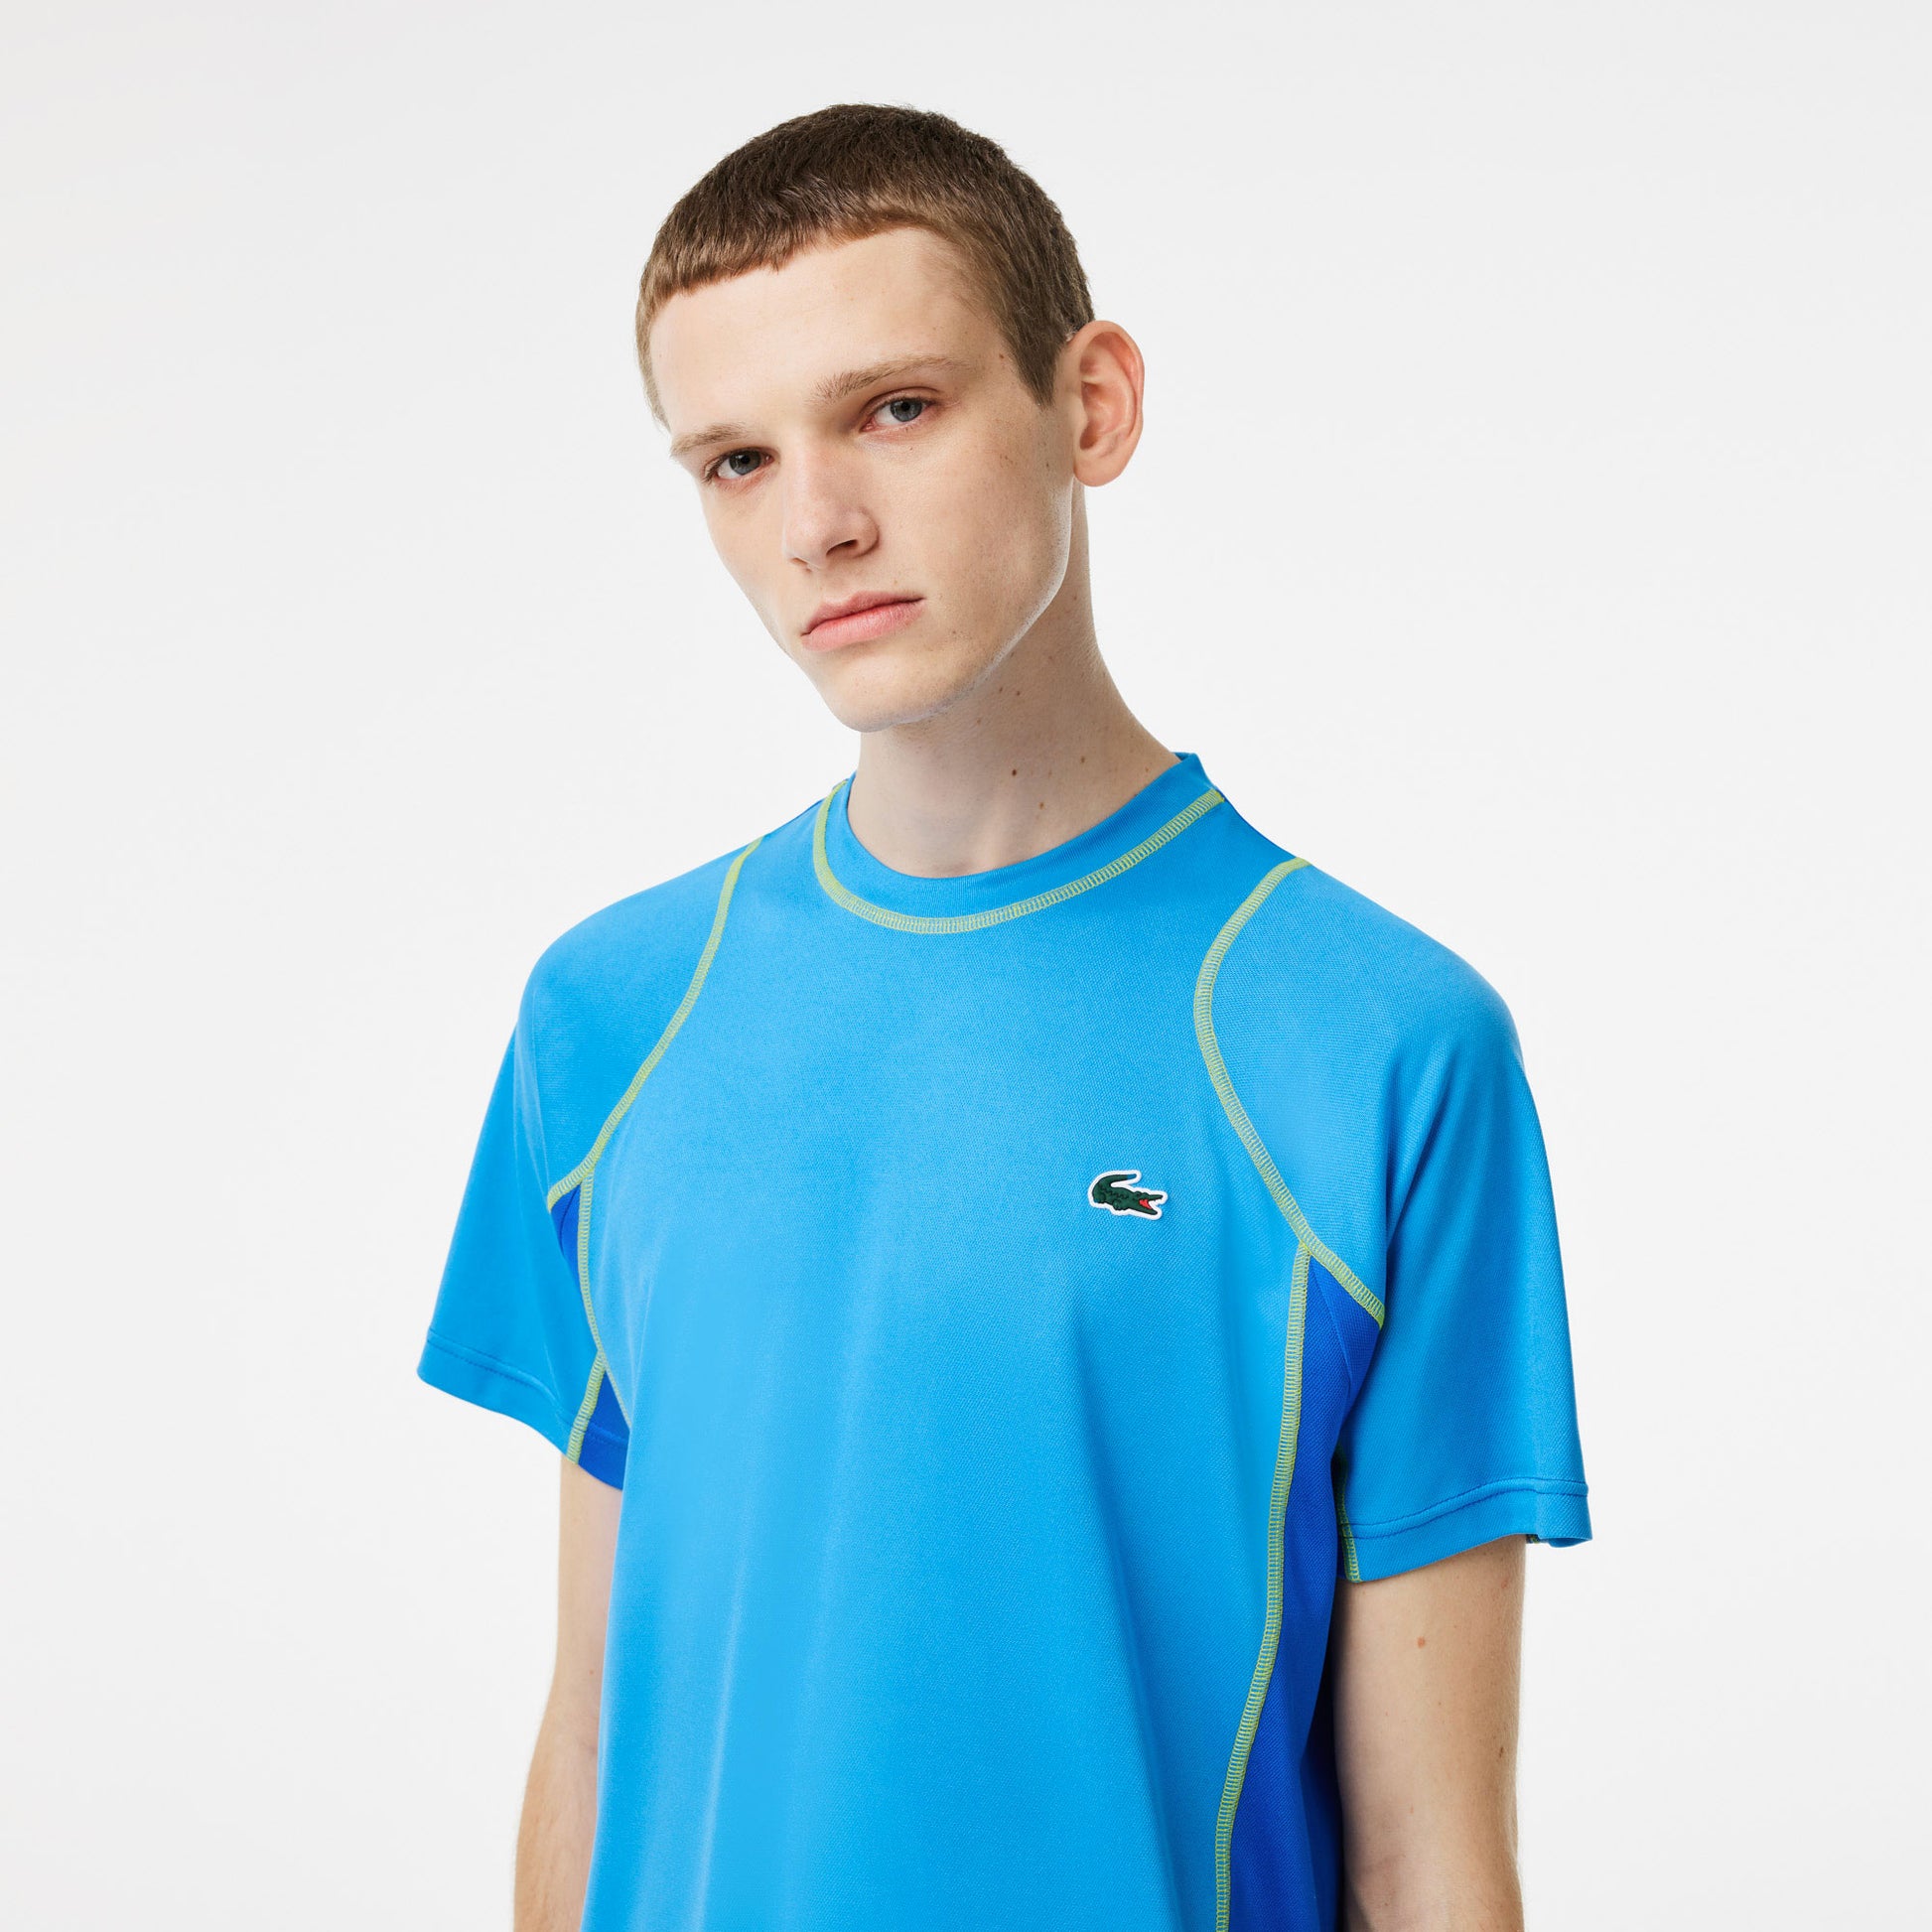 Lacoste Ultra Dry Men's Pique Tennis Shirt Blue (3)